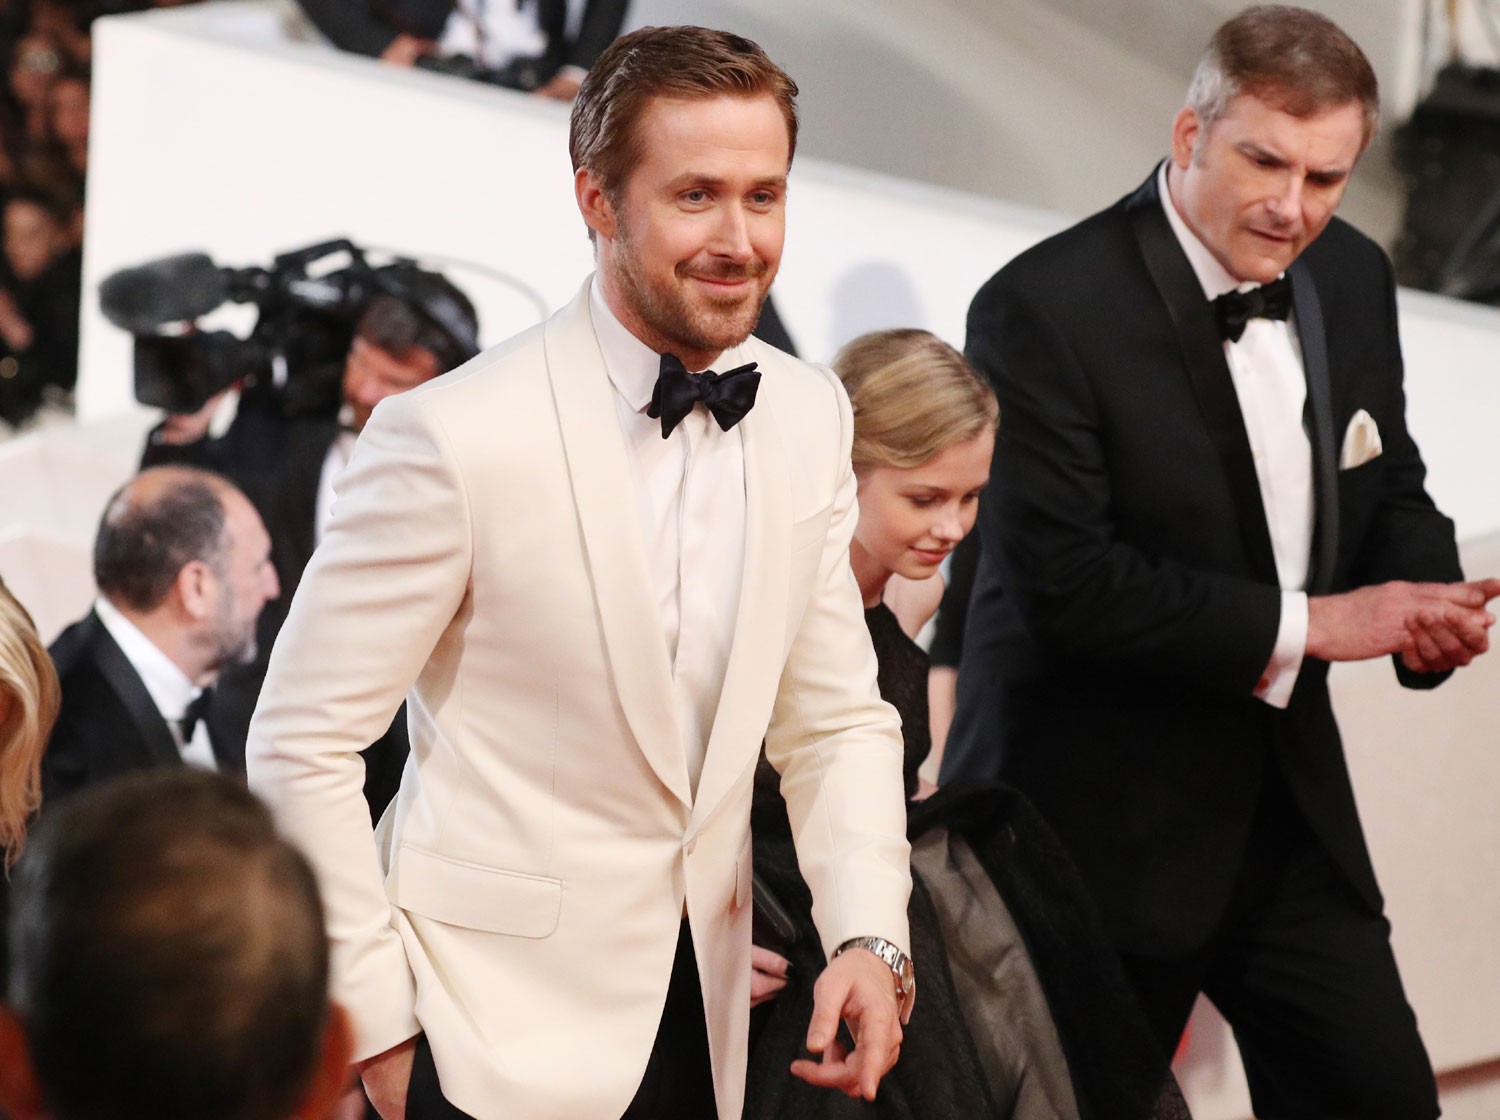 Ryan Gosling lidera o elenco dos mais gatos do Festival de Cannes 2016 (Foto: Getty Images)